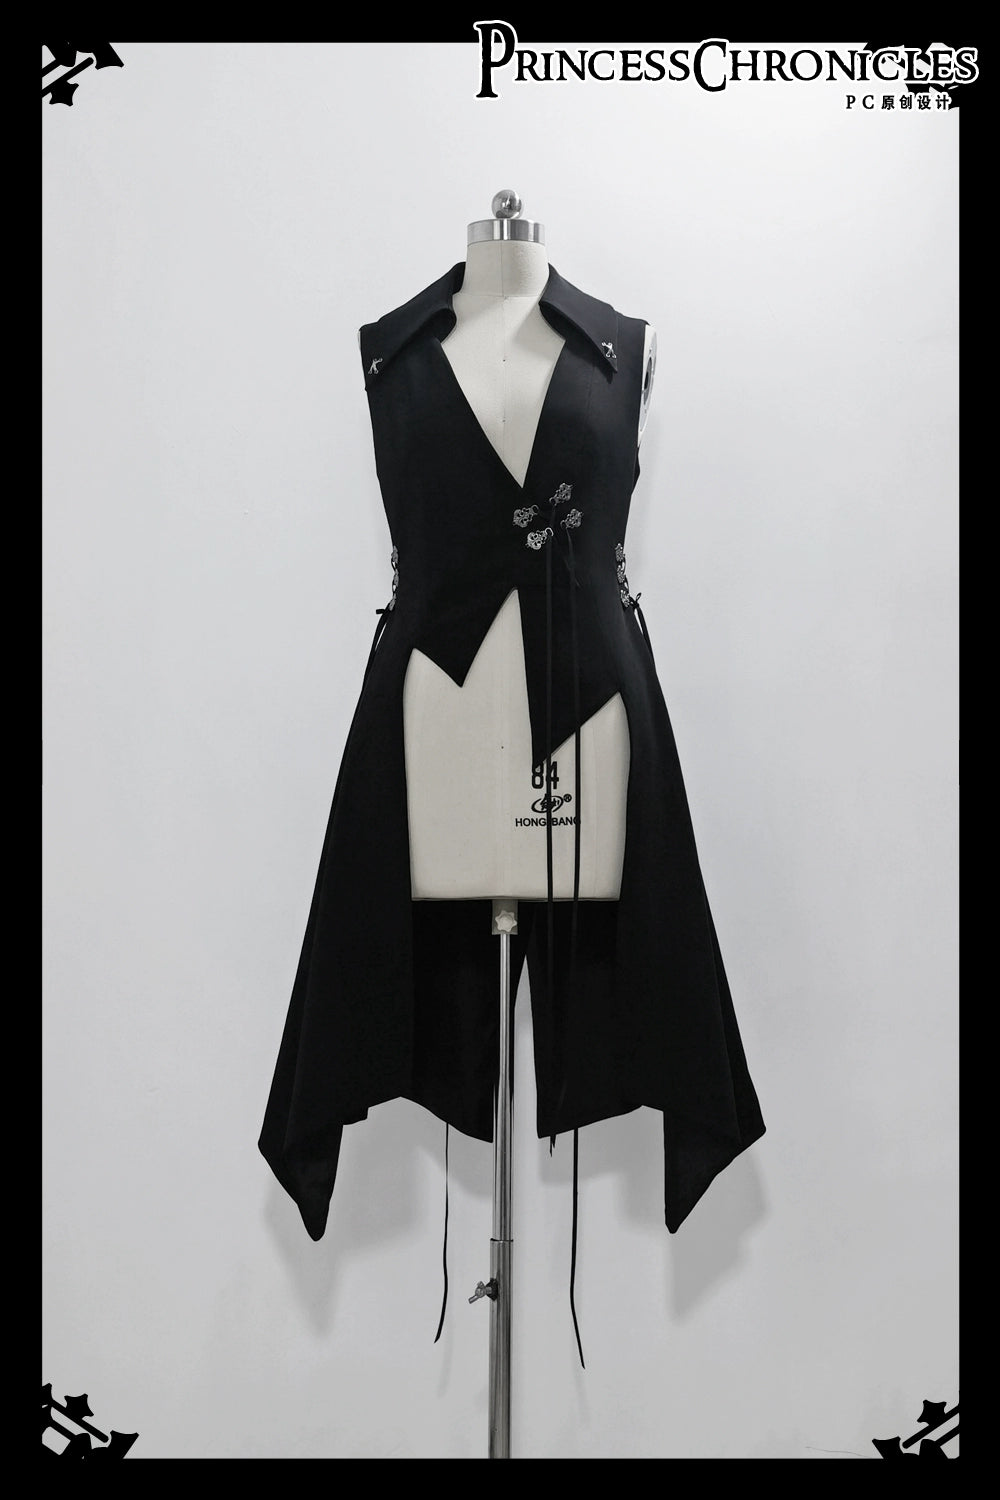 [Pre-orders available until 5/13] Crimson Ash Prince-style long vest